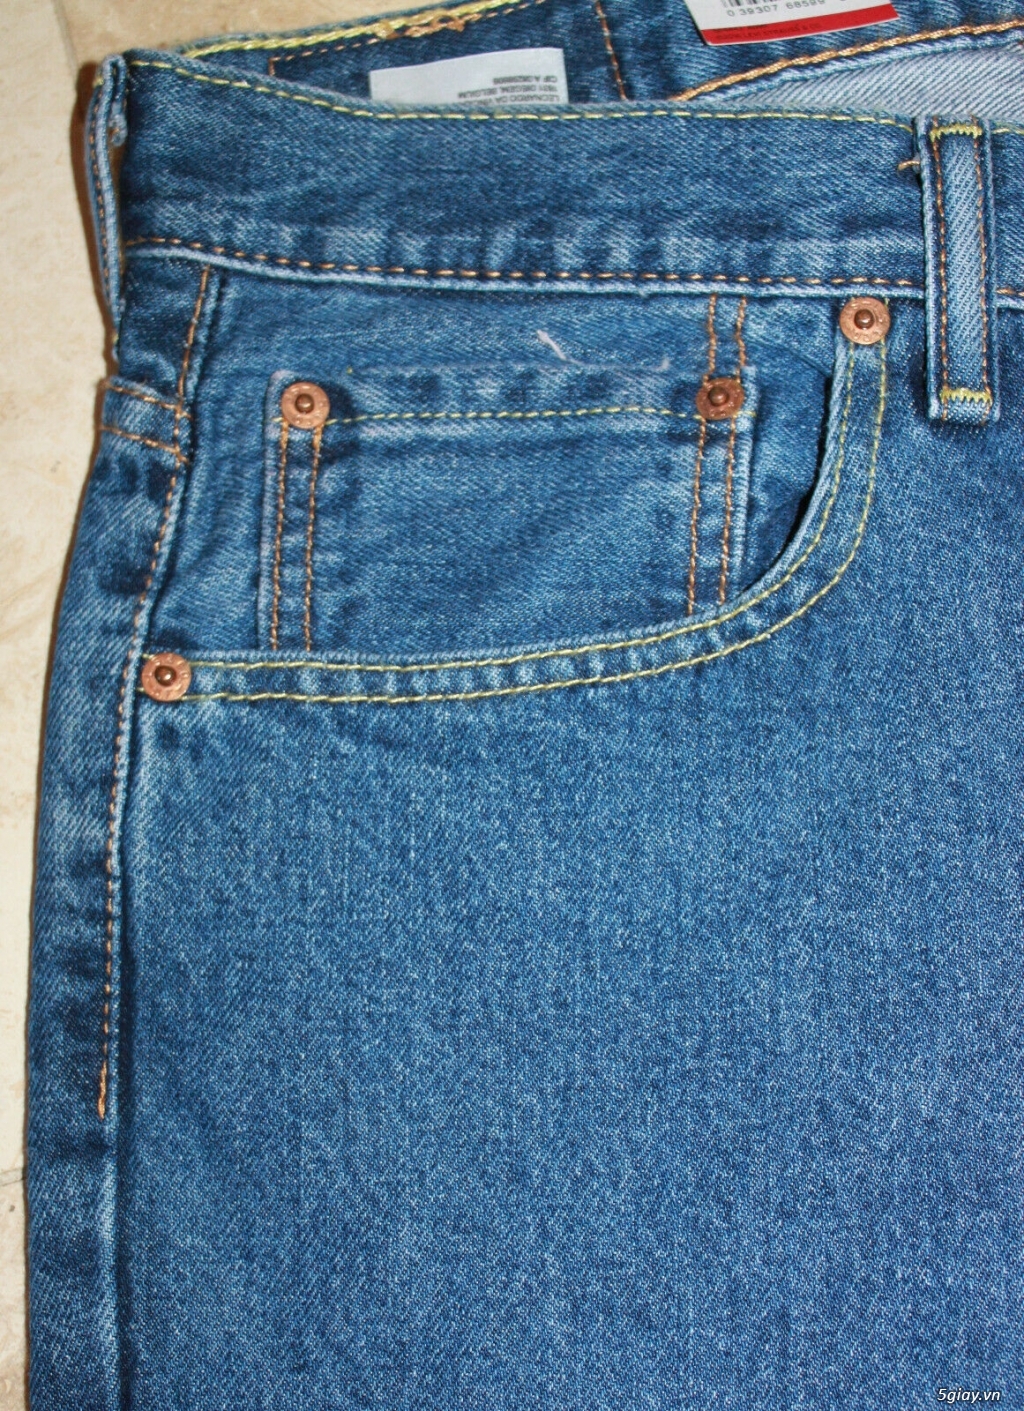 Cần bán quần jeans chính hãng Levi's 560 size 32x34 - 1